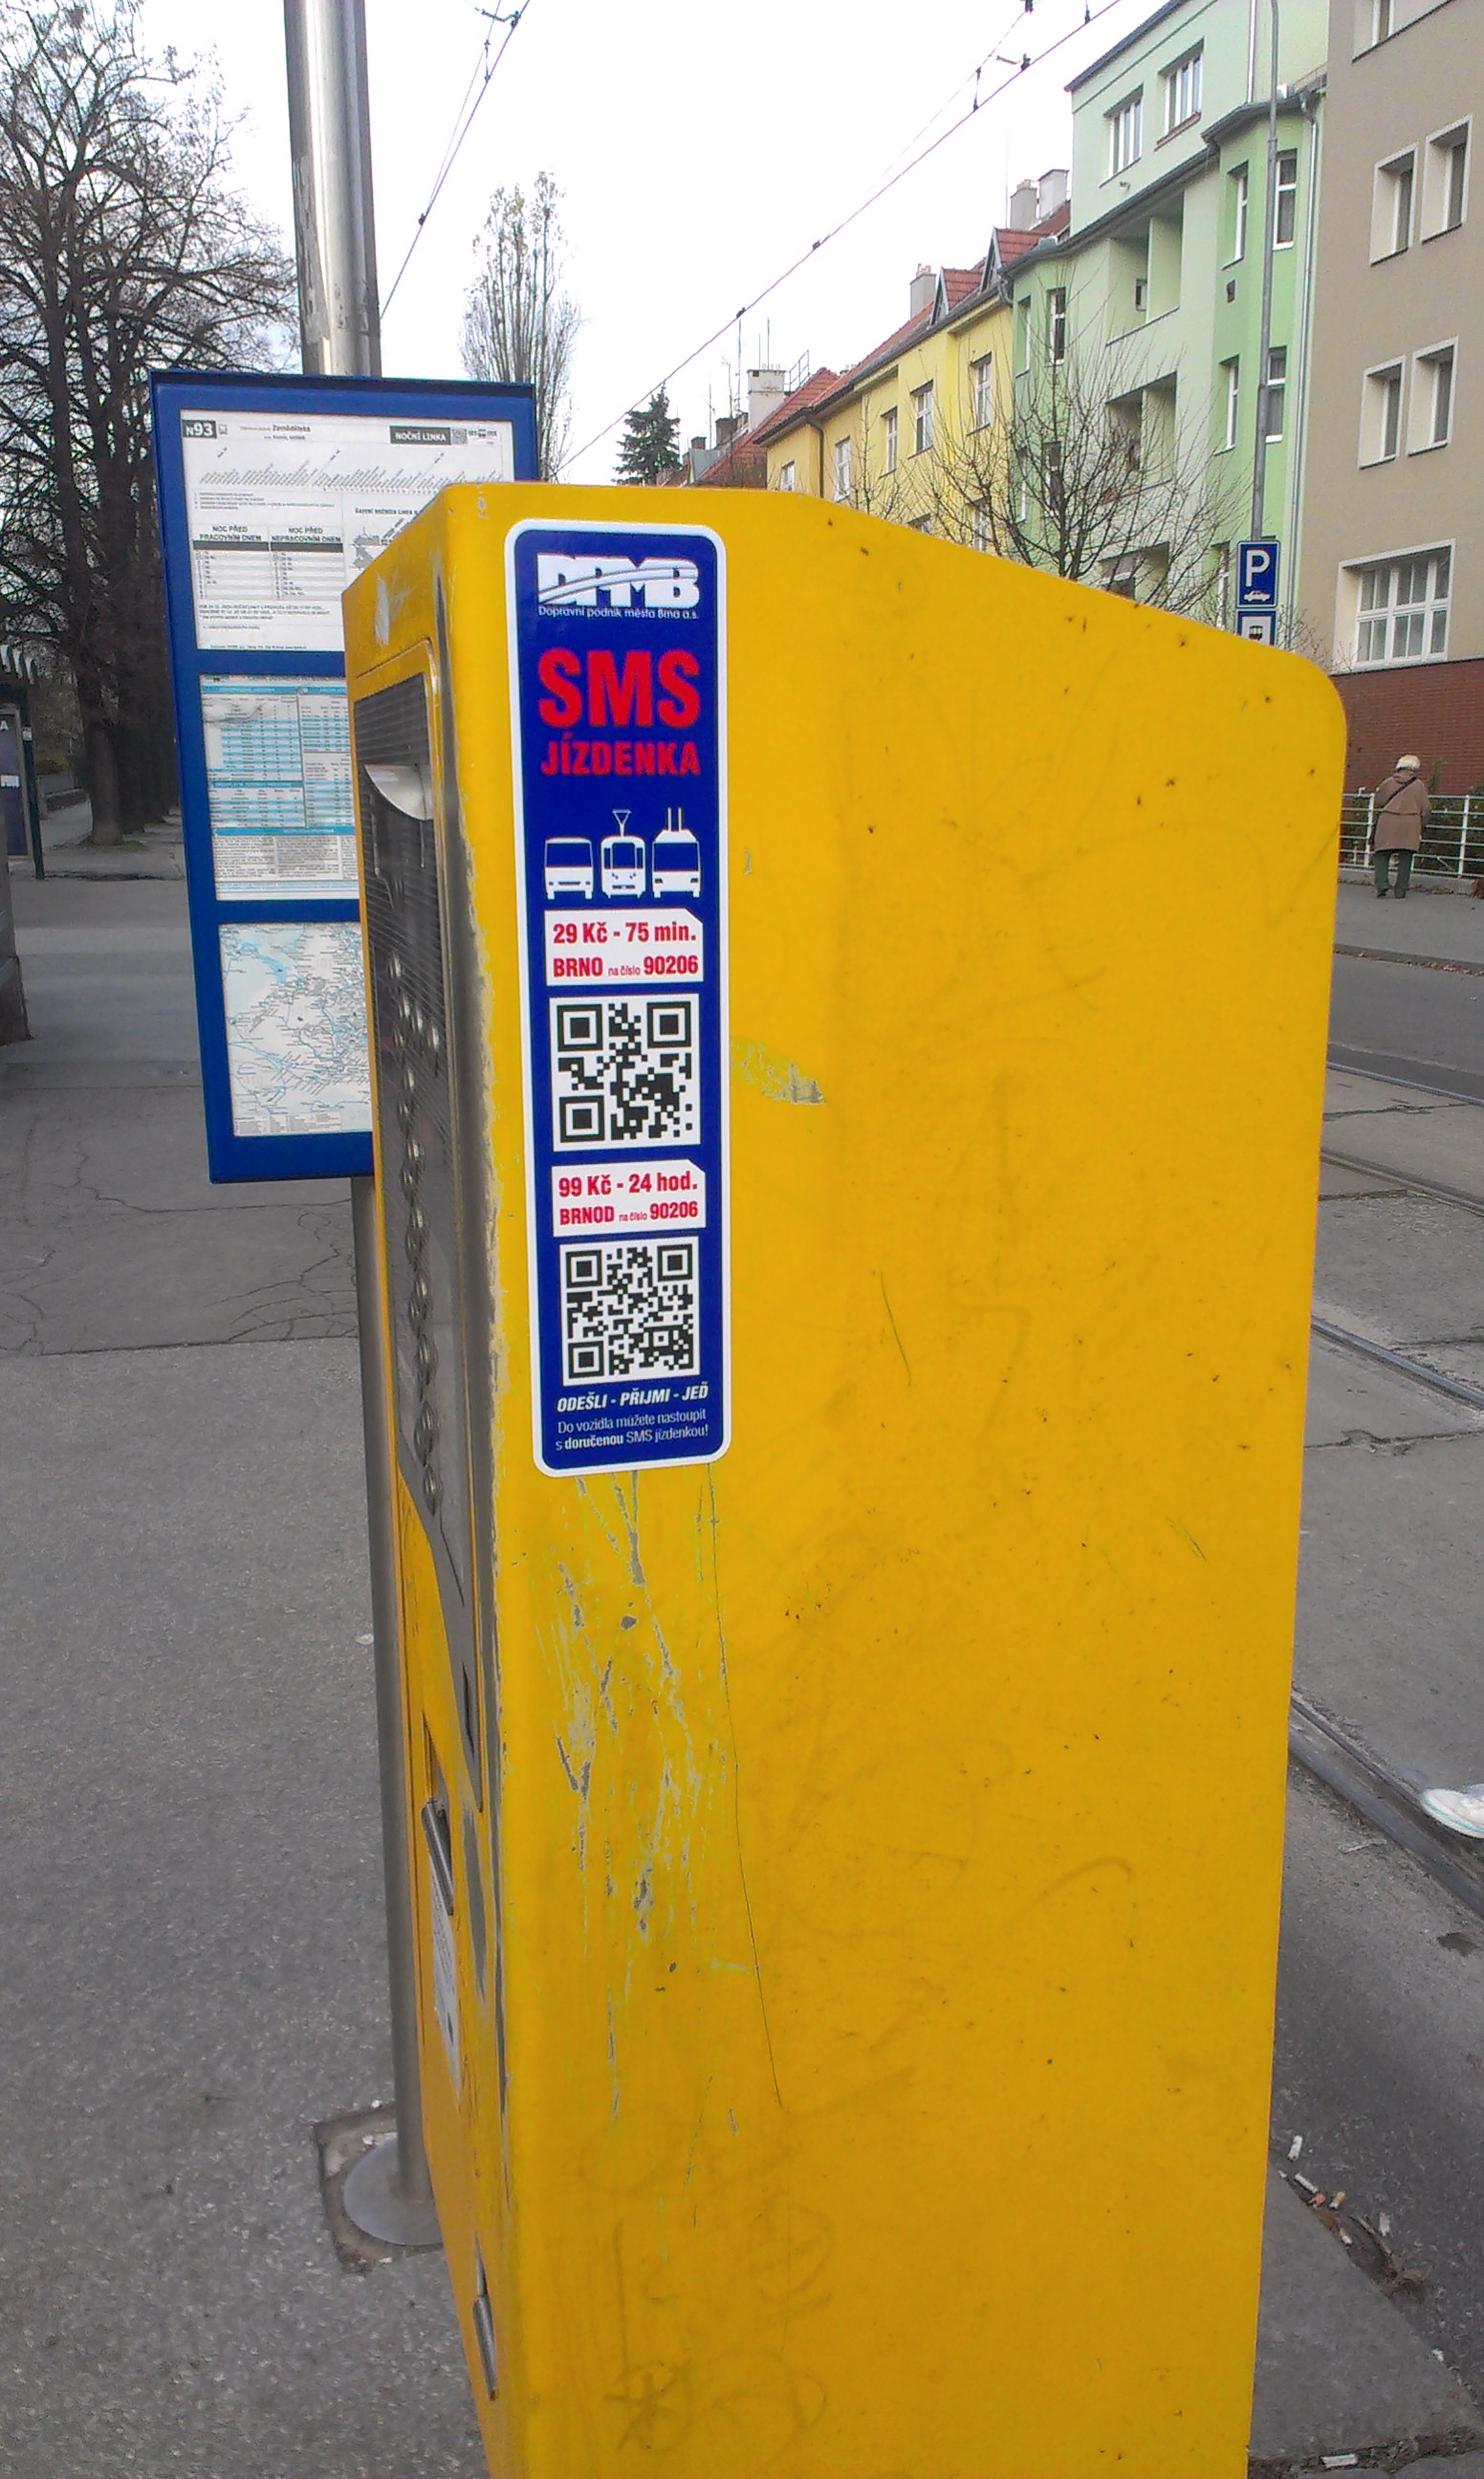 QR kod SMS jízdenky na nákupním automatu